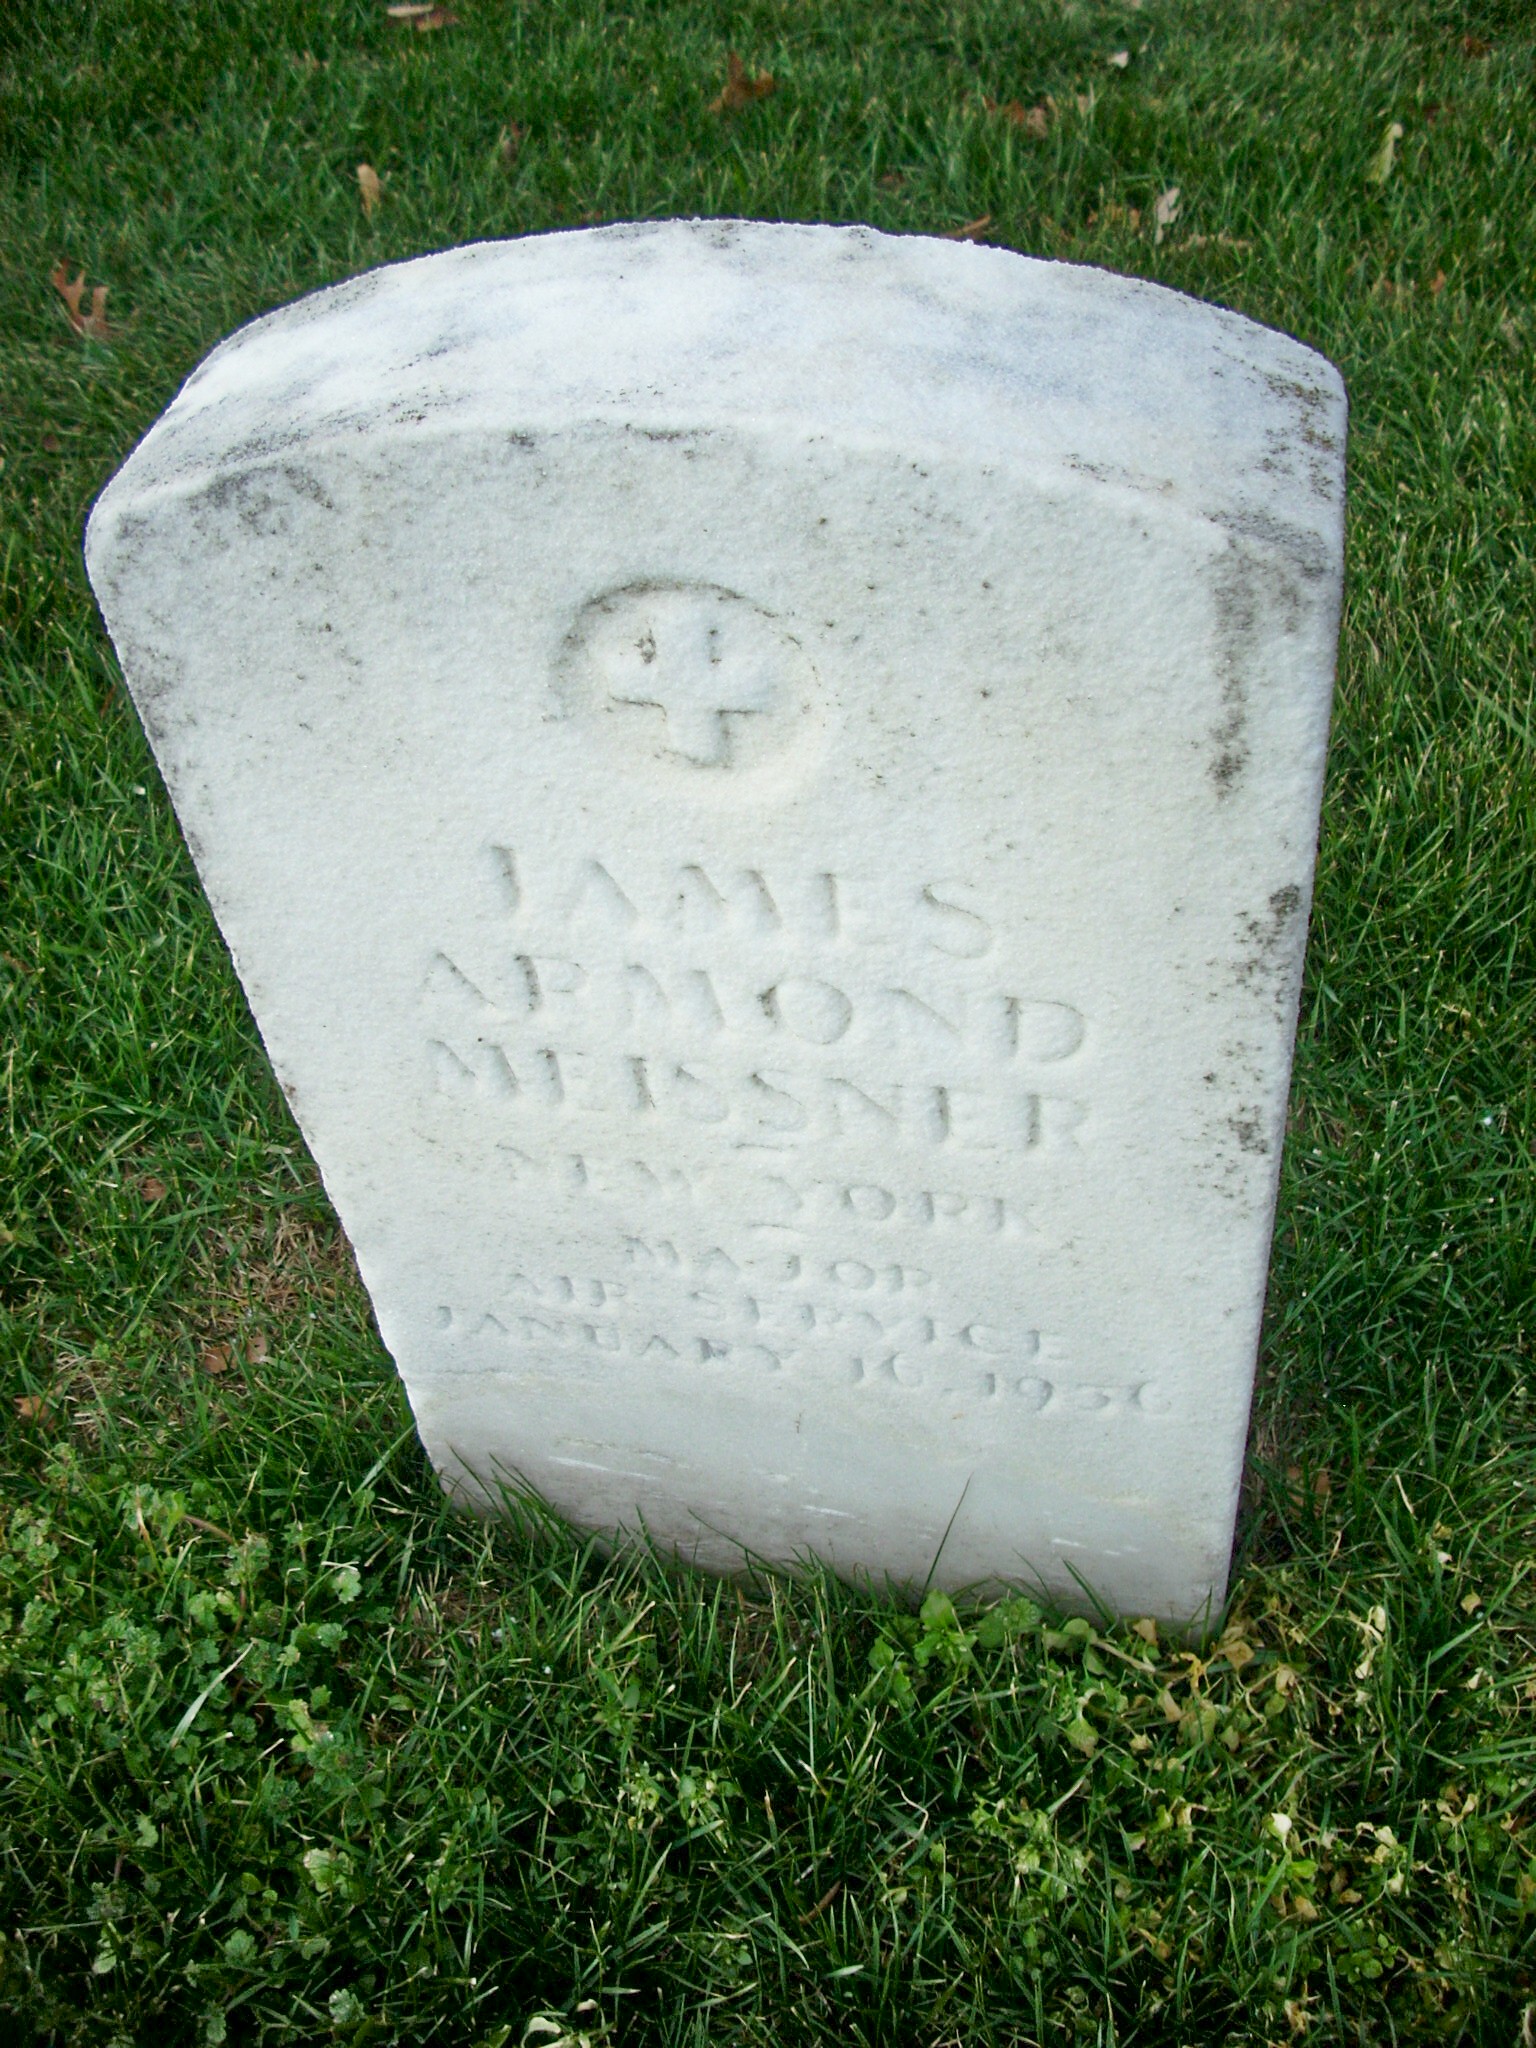 jameissner-gravesite-photo-january-2009-001